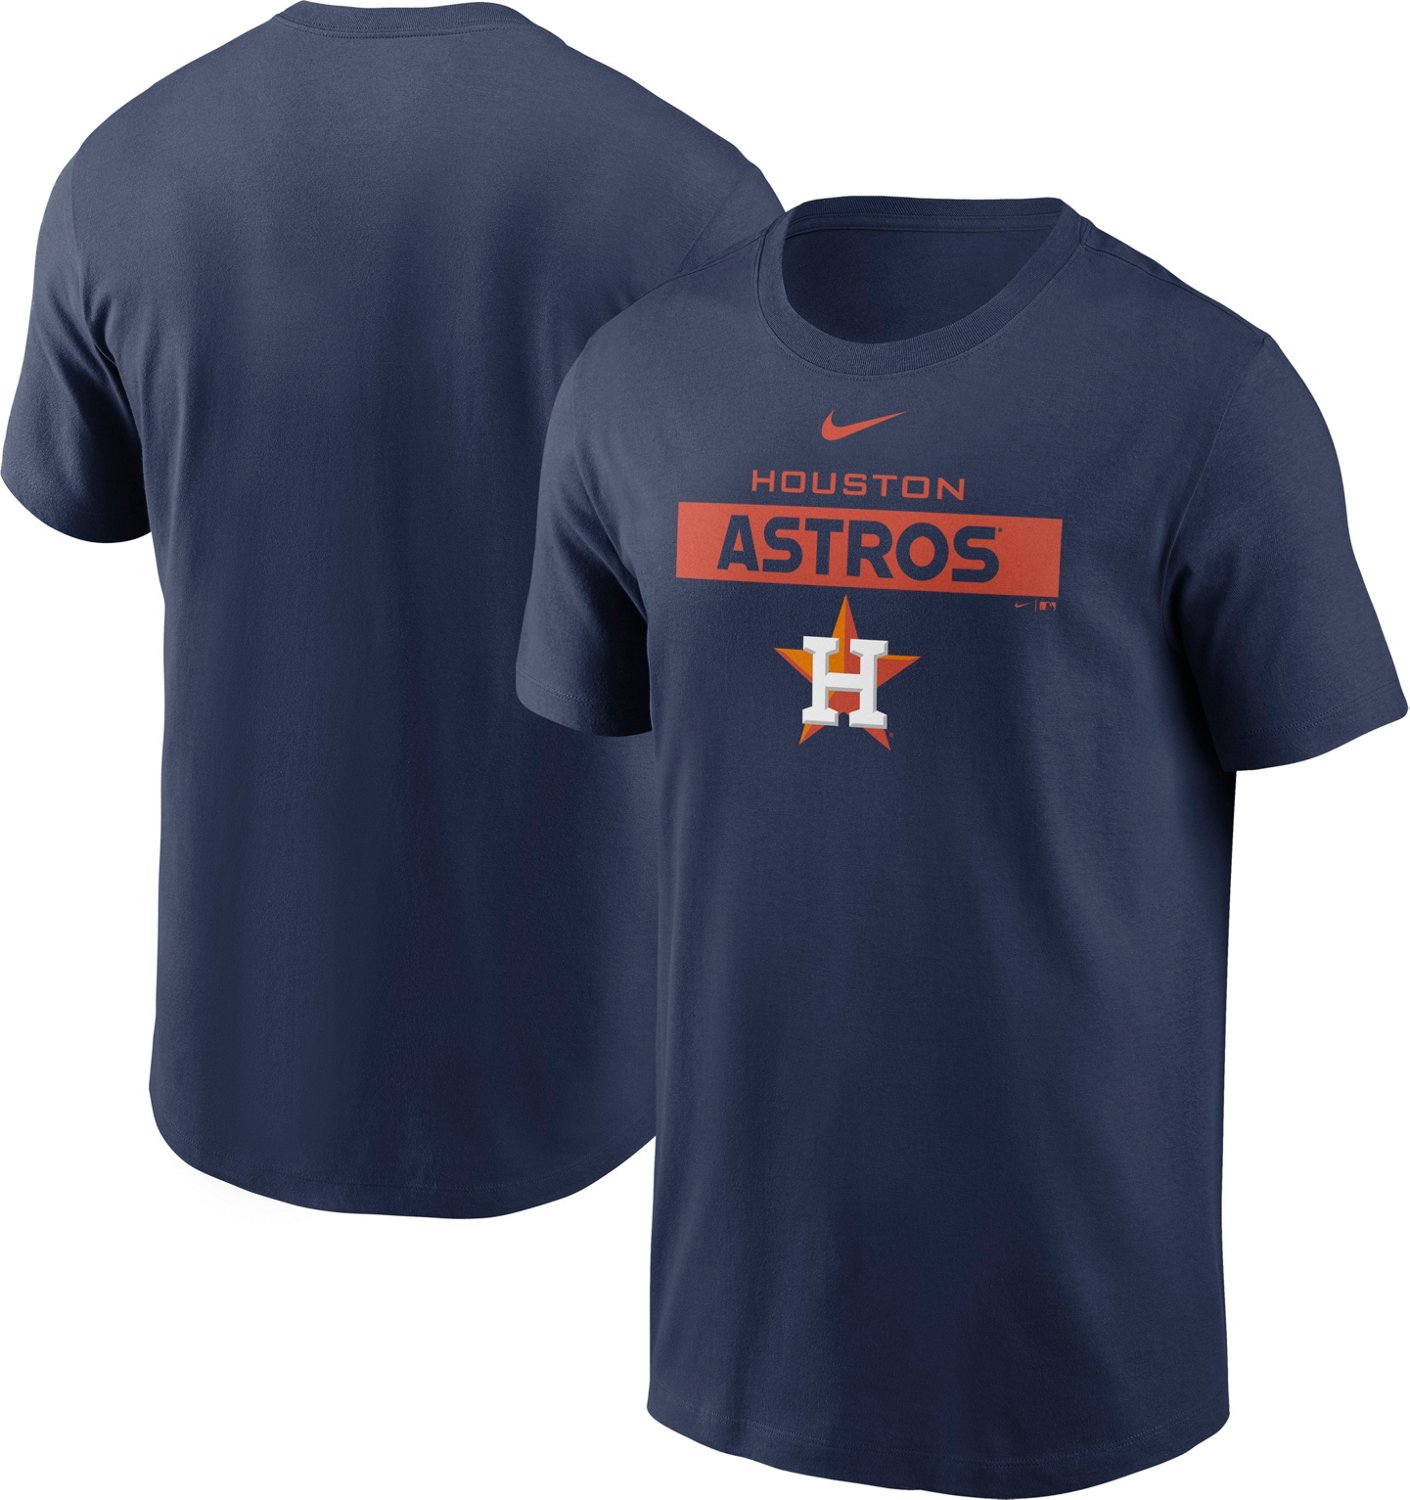 Nike Men’s Houston Astros Team Issue T-shirt